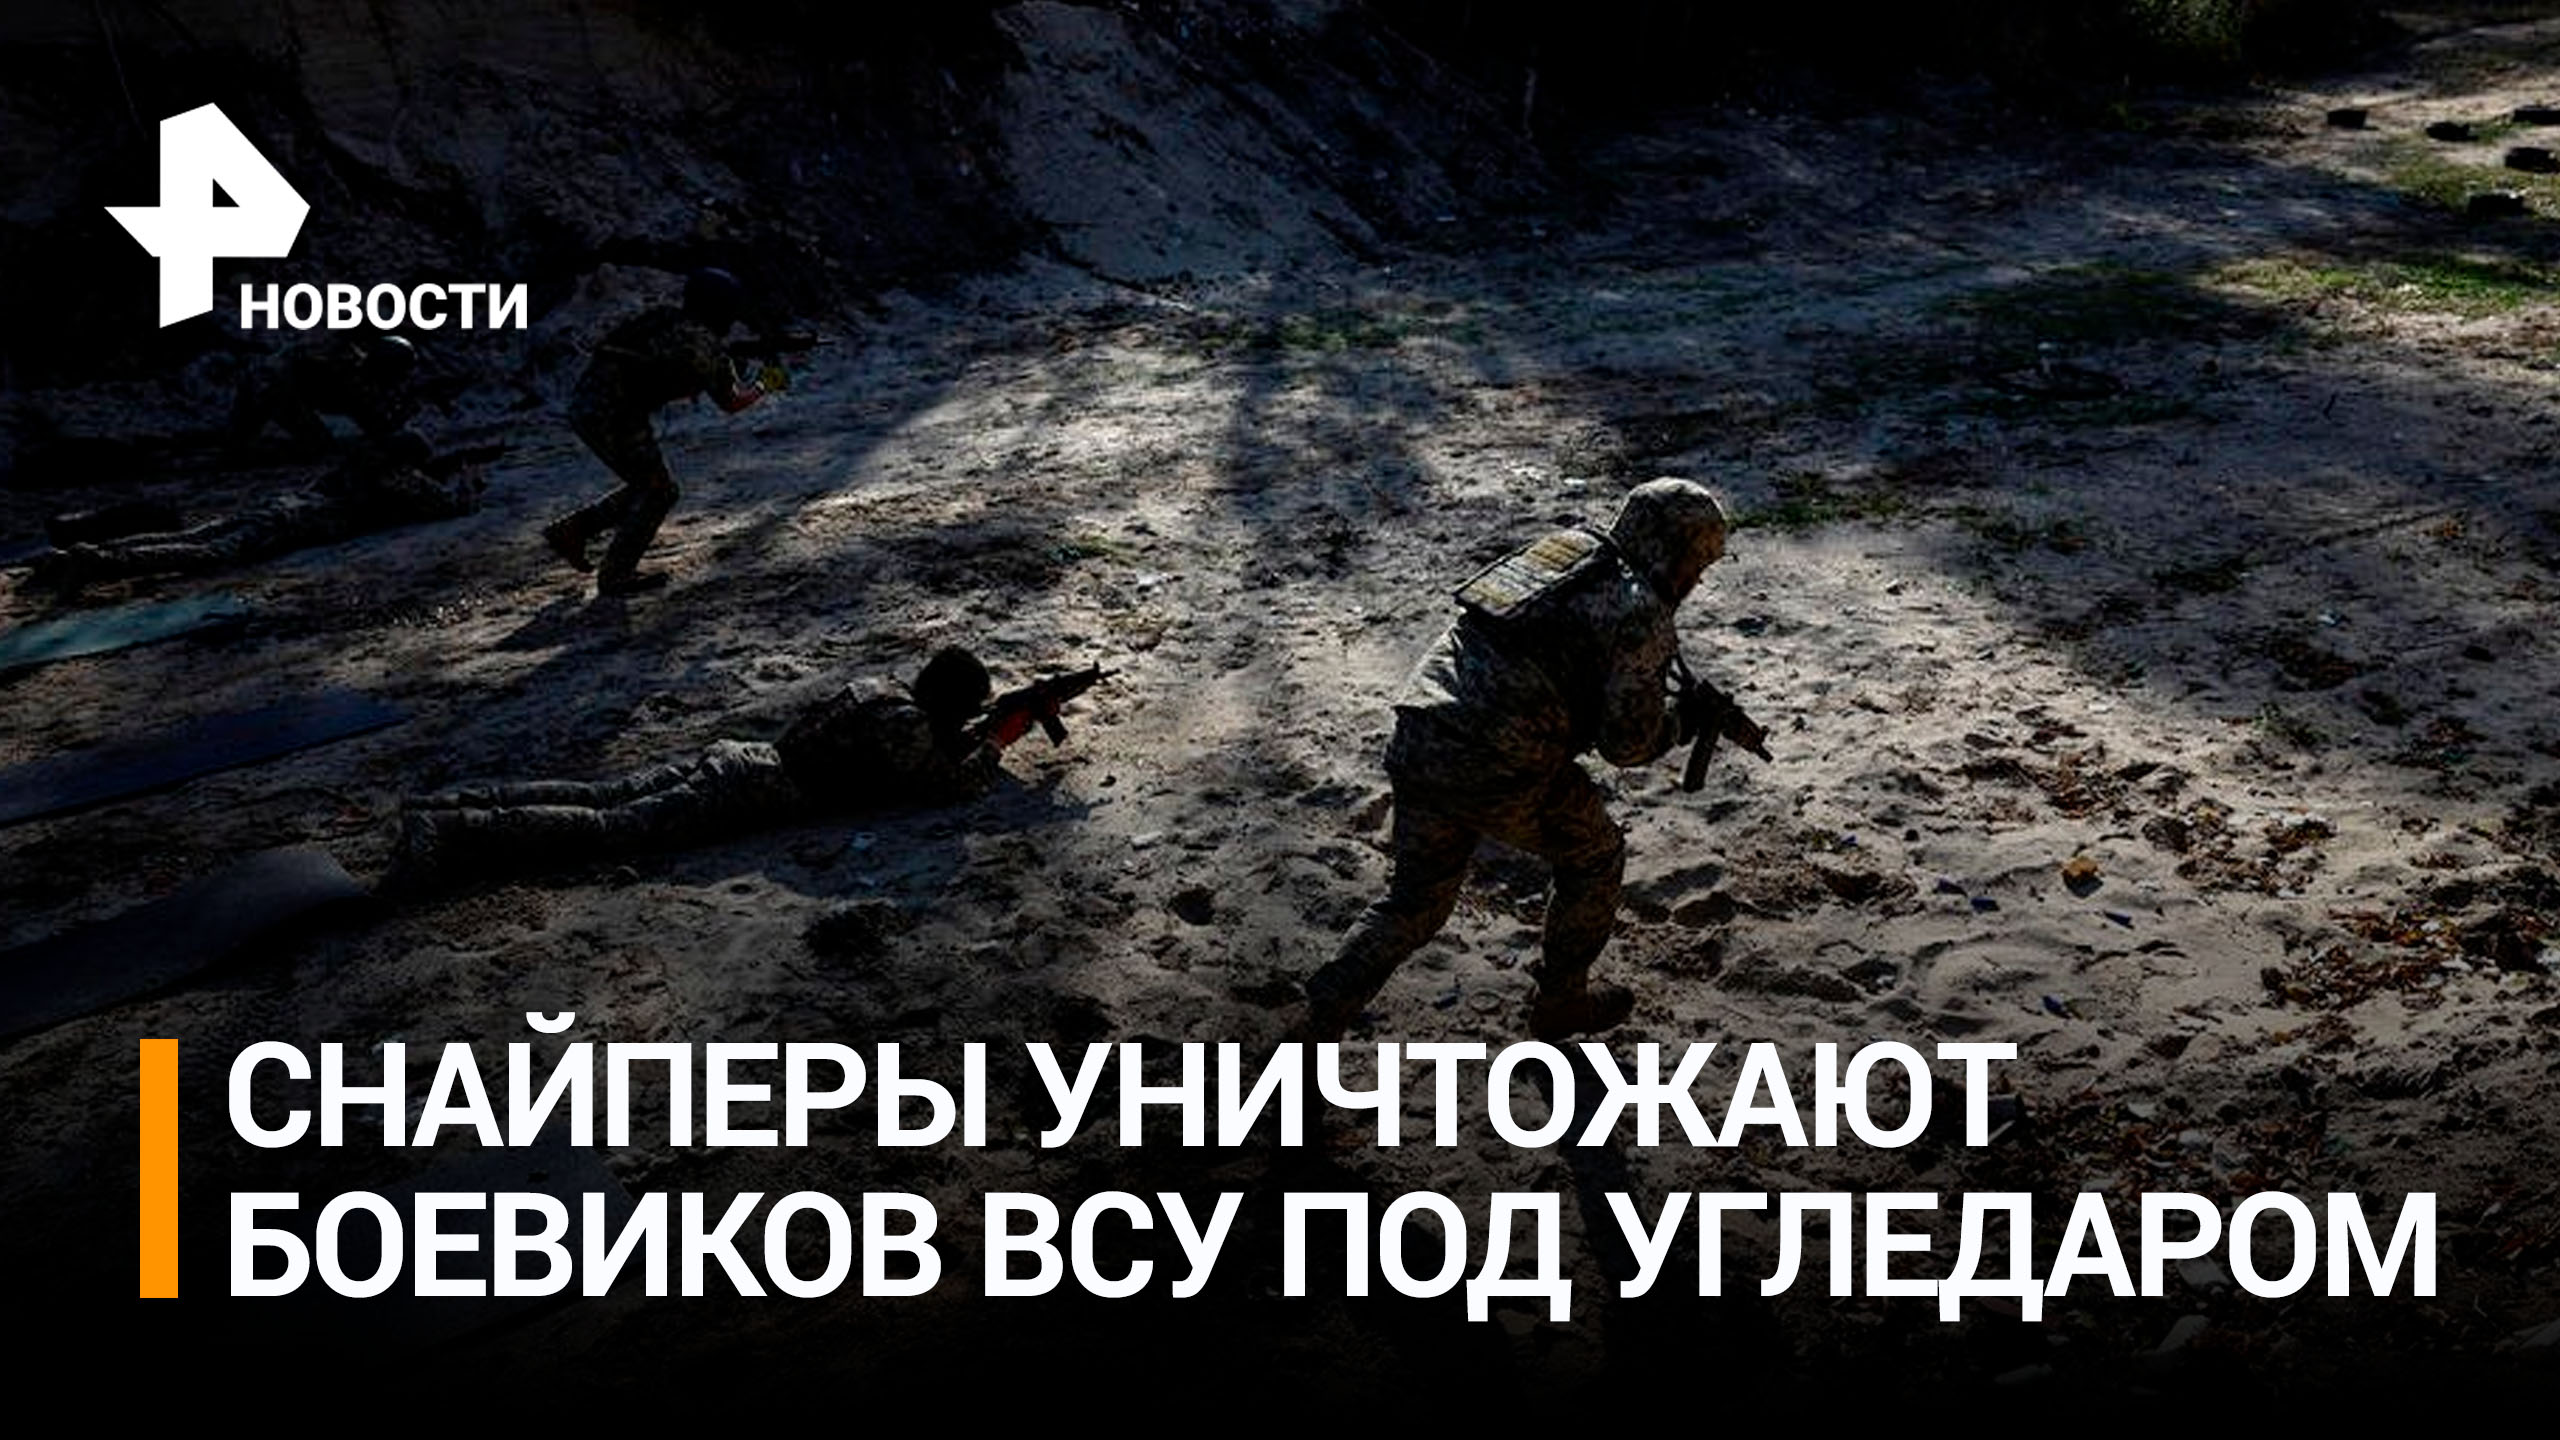 Российские снайперы уничтожают боевиков ВСУ под Угледаром / РЕН Новости